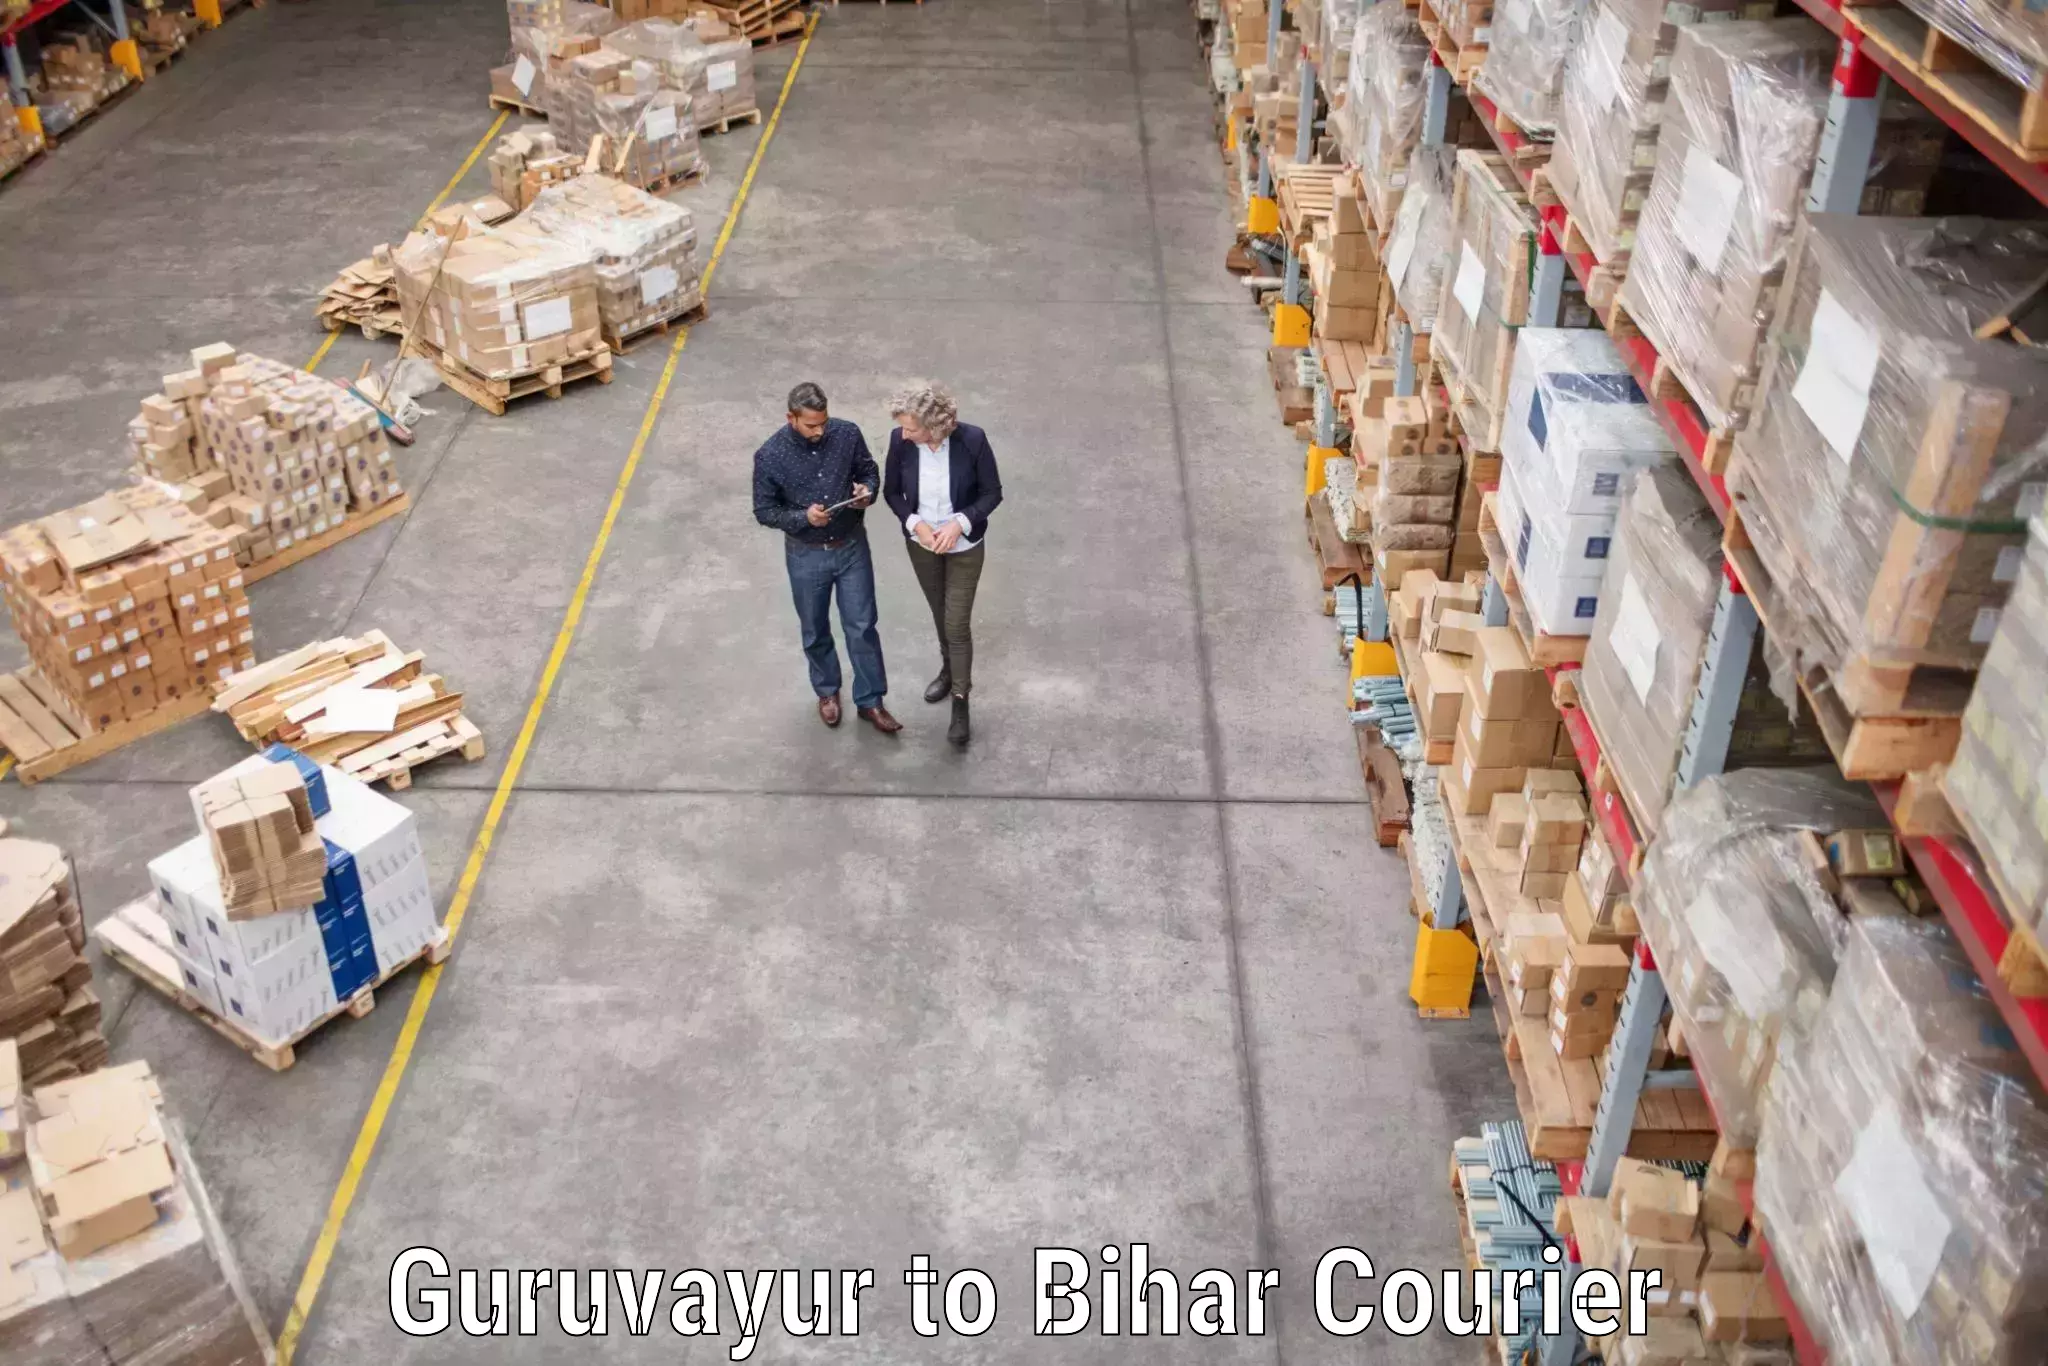 Moving and packing experts Guruvayur to Bihar